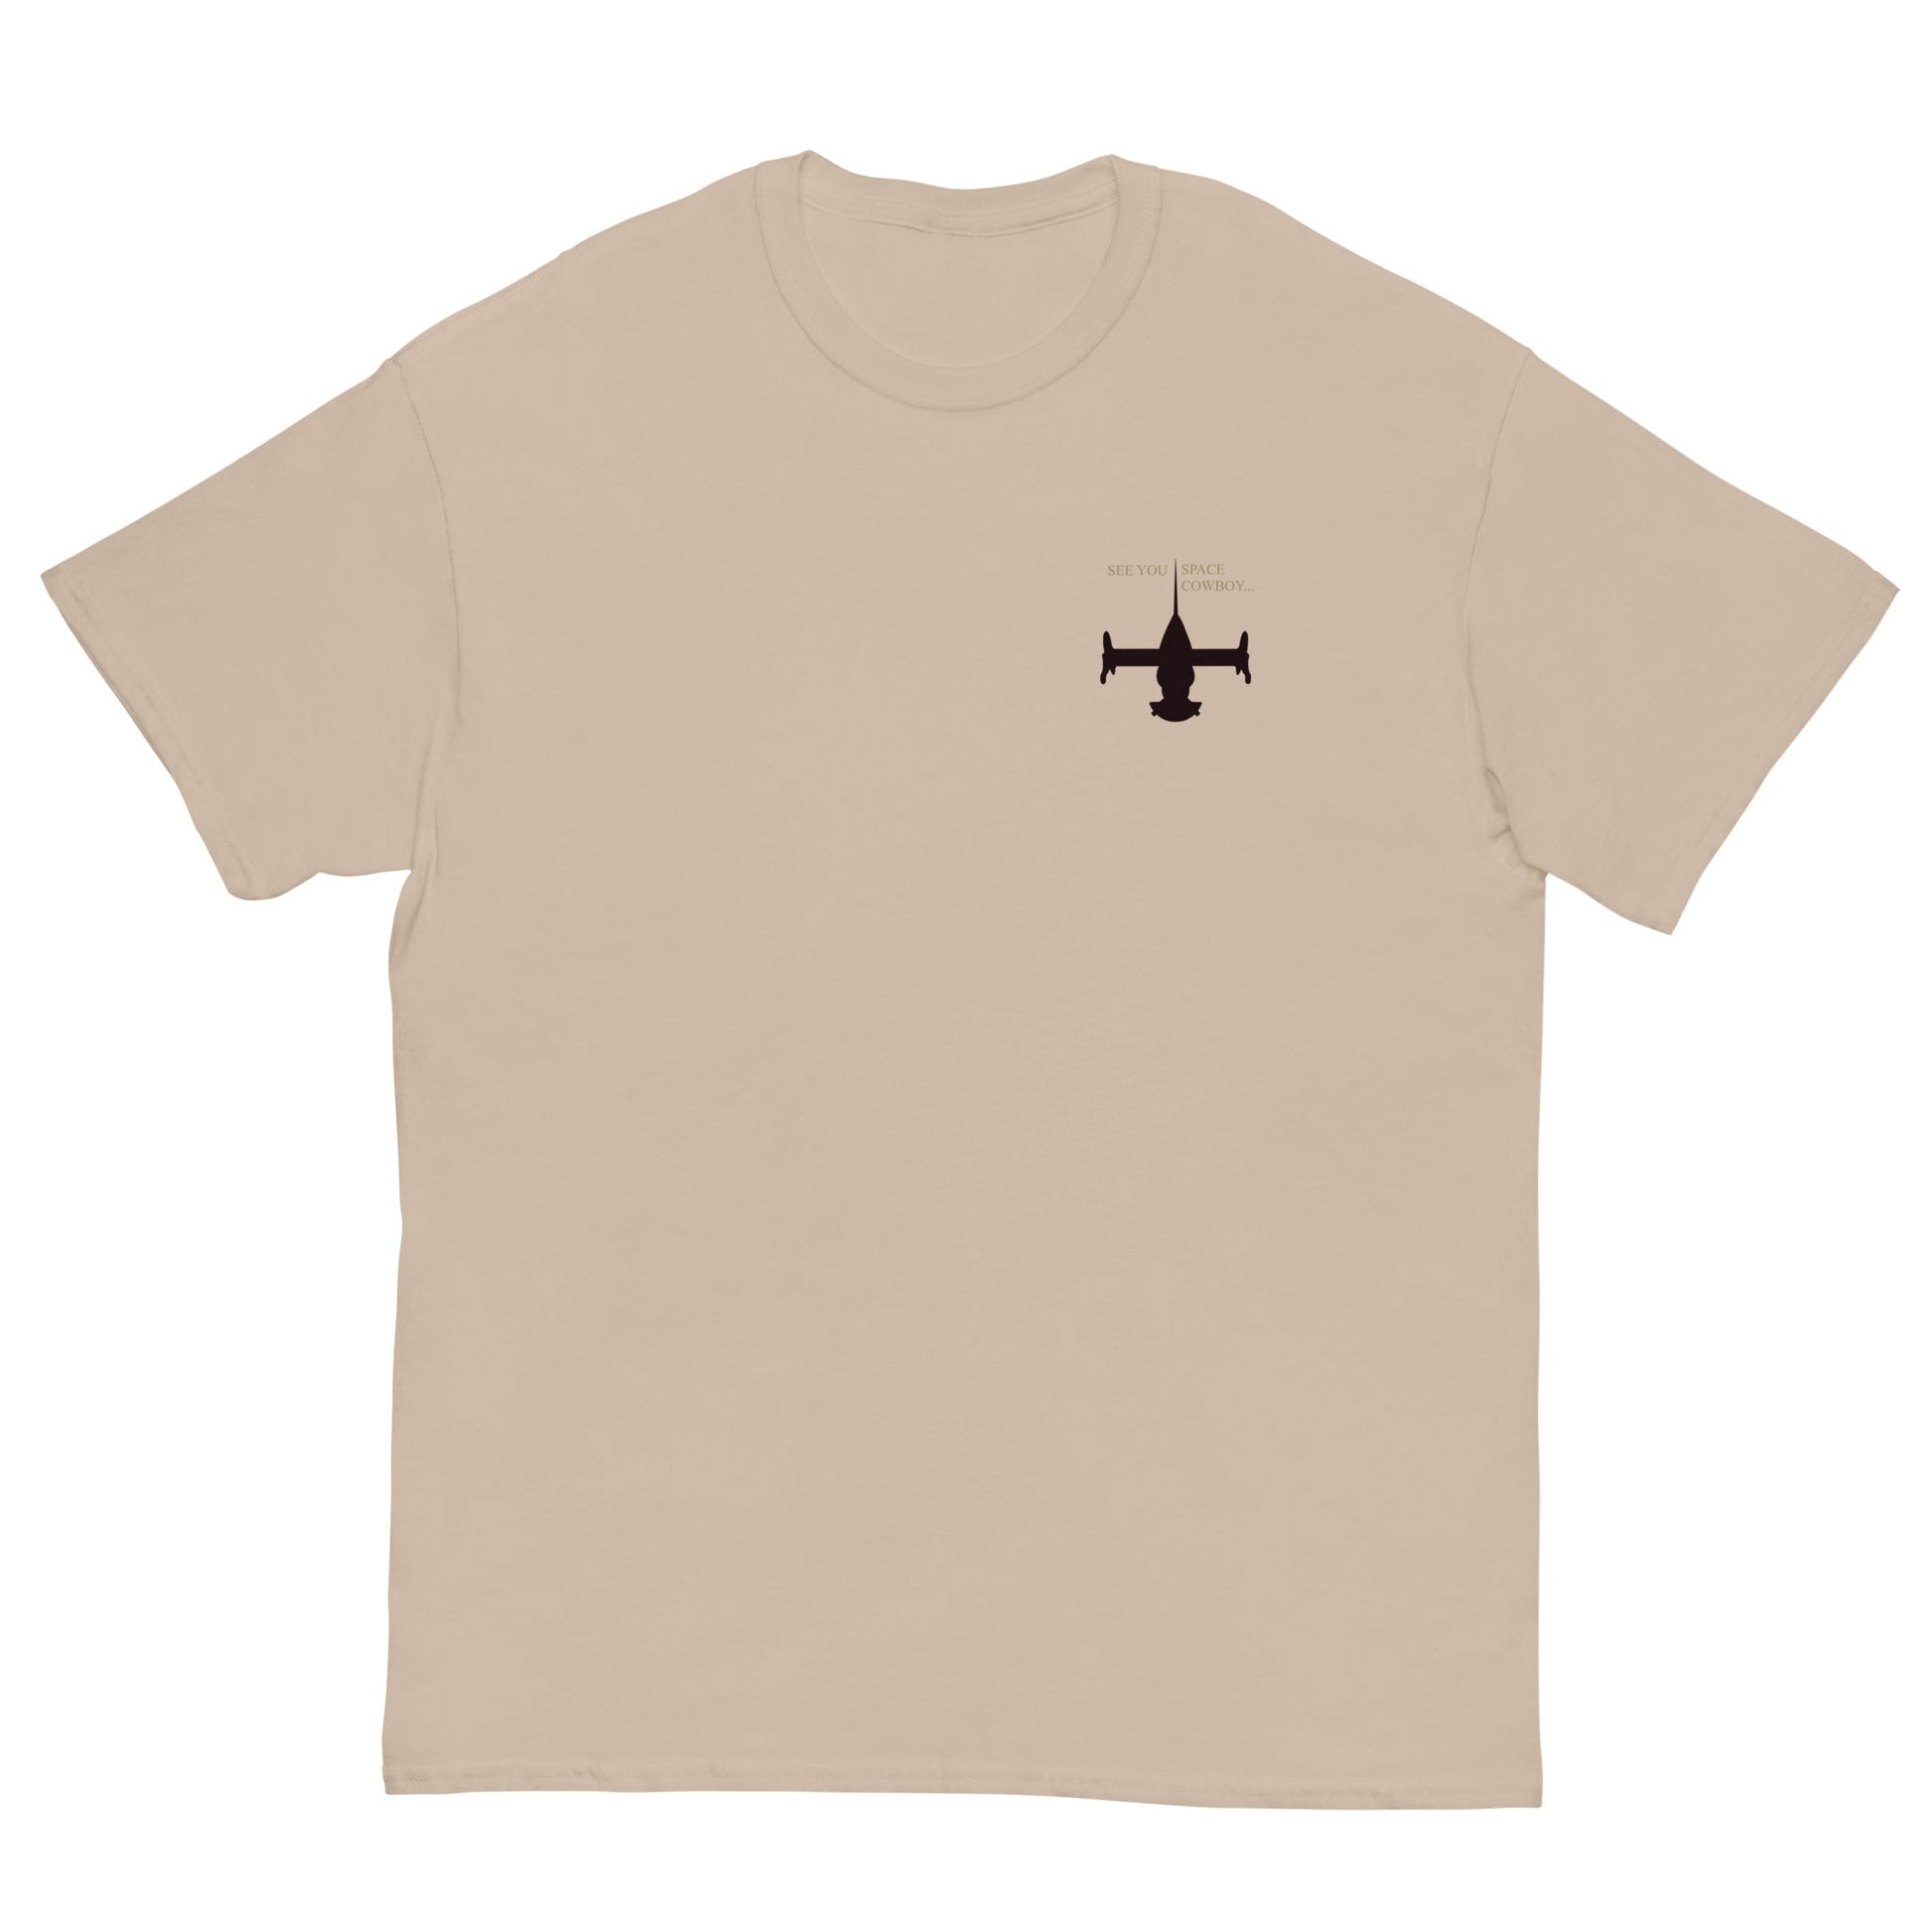 Space Cowboy - T-Shirt - Project NuMa - T-Shirt